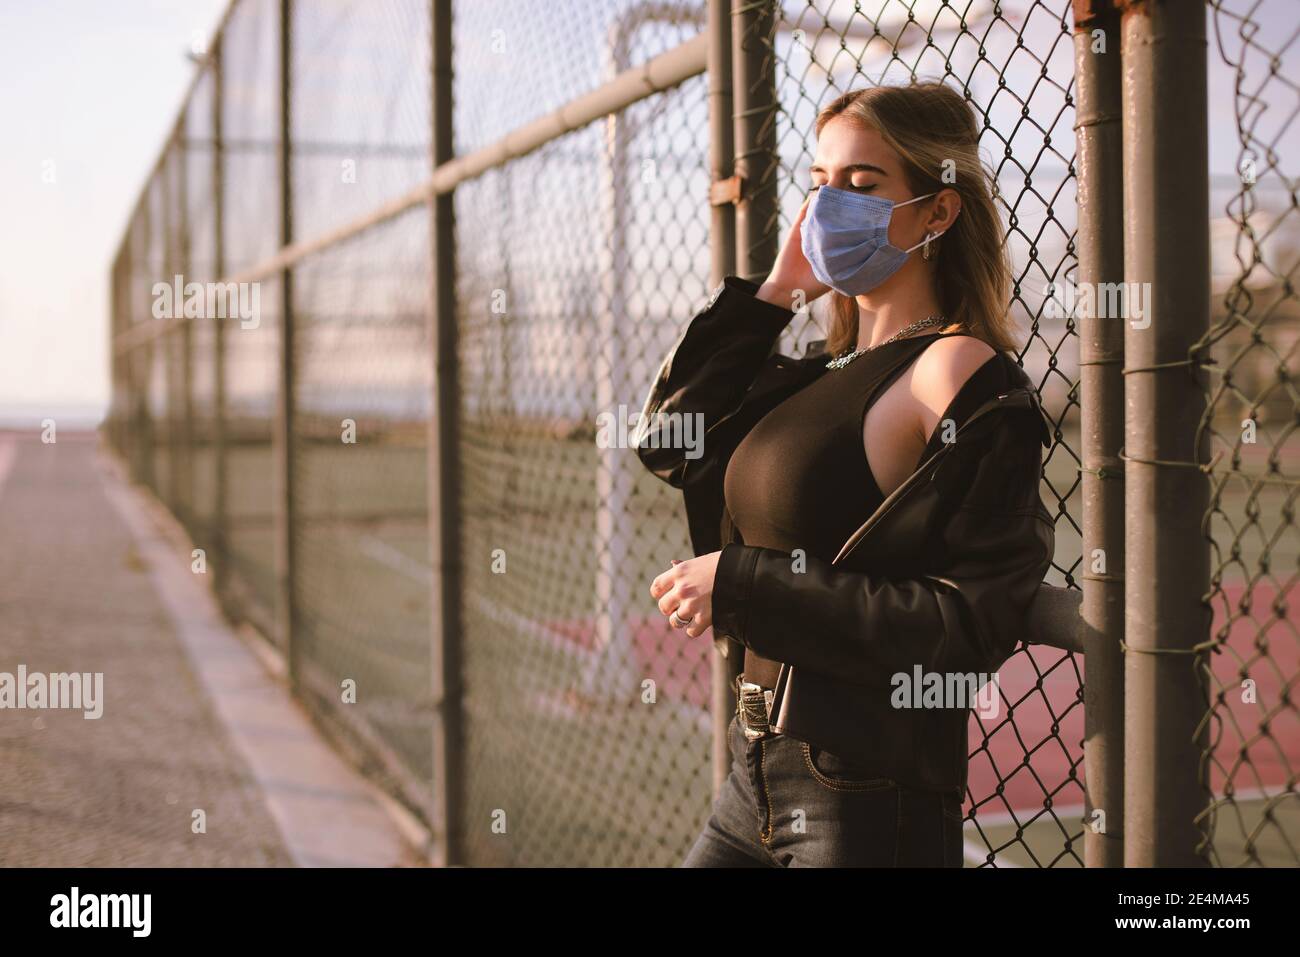 Ritratto di una ragazza adolescente con una maschera medica viso sulla strada, e pendente a una recinzione. Foto Stock